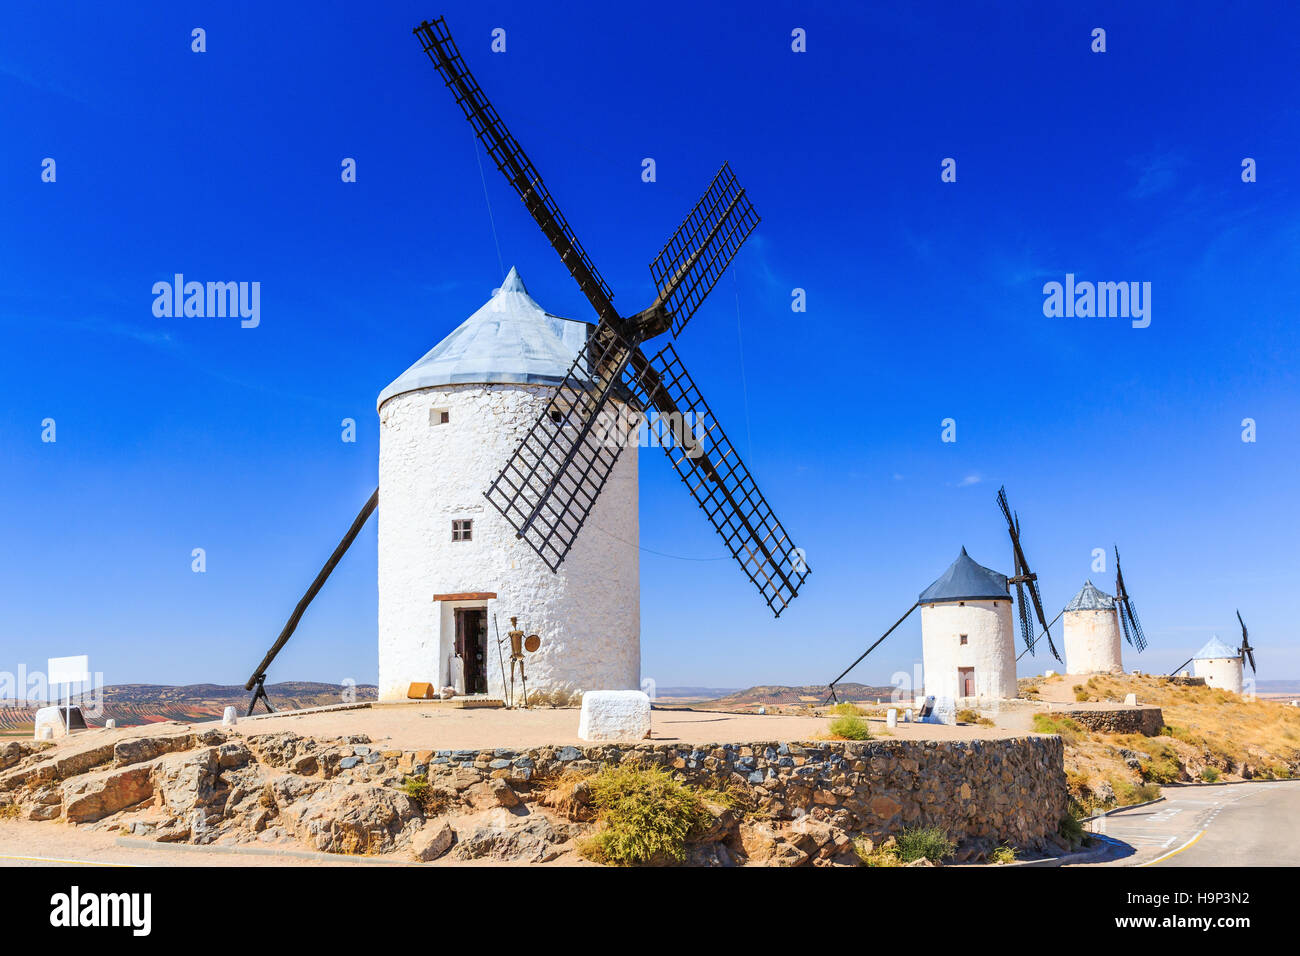 Albacete, Espagne. Les moulins à vent de Don Quichotte dans la province de Tolède. Banque D'Images